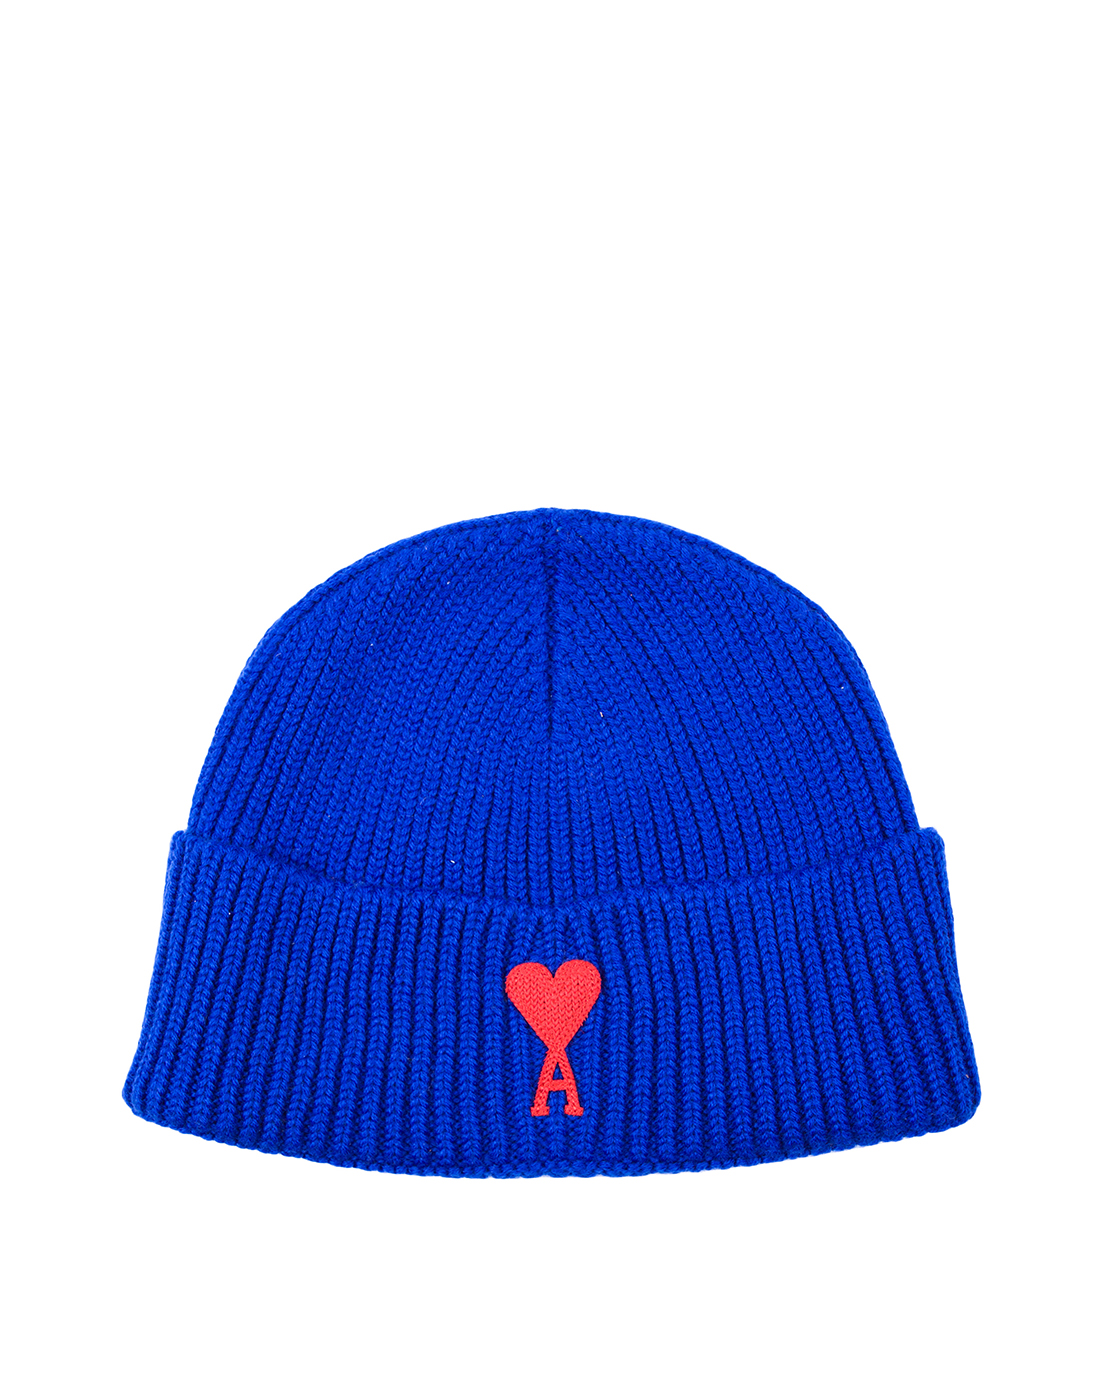 Стильная шапка Ami Paris с фирменным логотипом